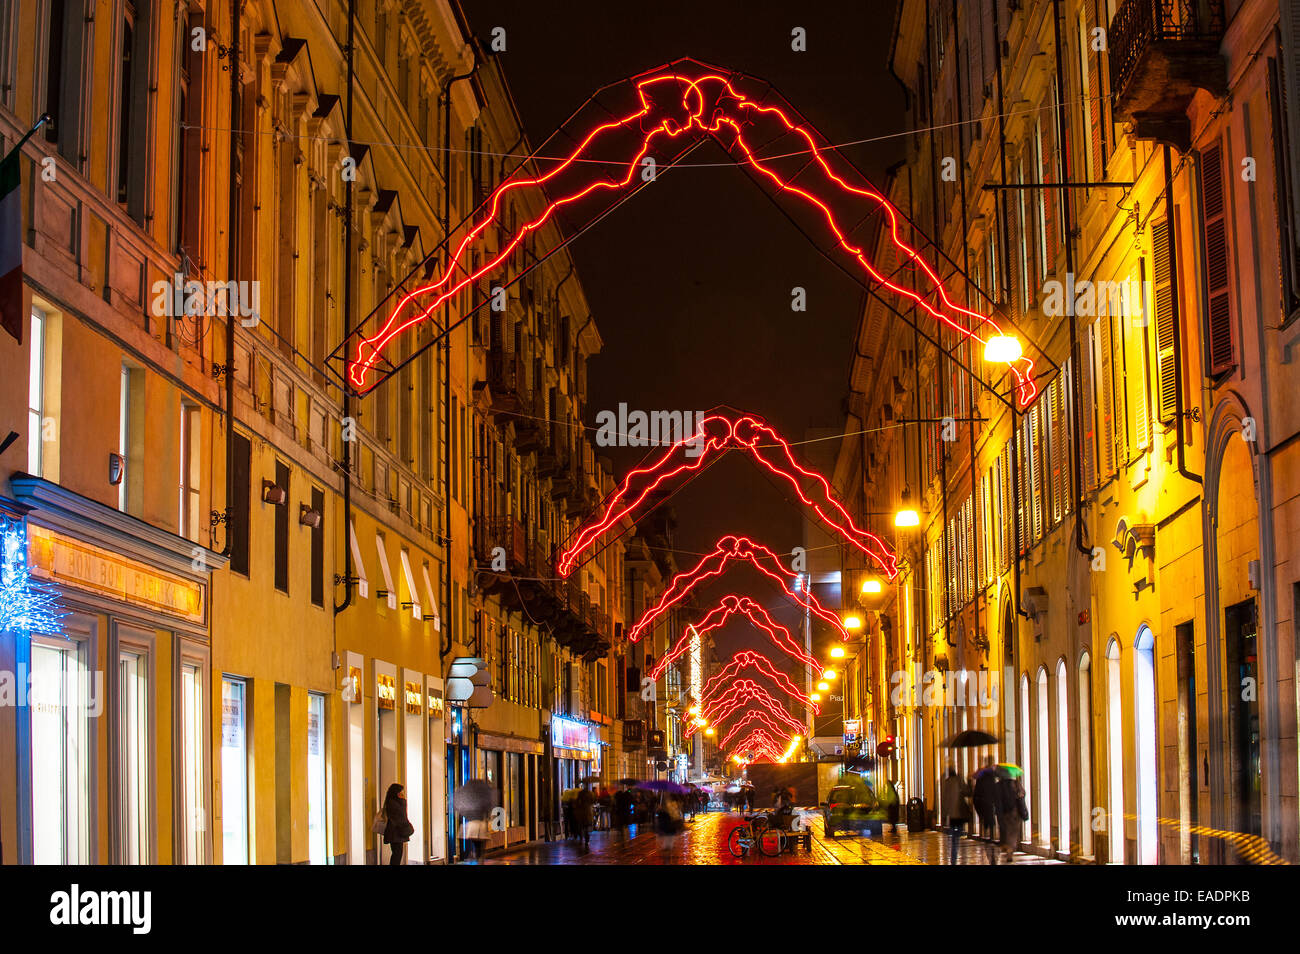 Turin, Italie. 12Th Nov, 2014. Italie Piémont Turin ' 'artista Luci' dans la Via Lagrange - Noi - par Luigi Stoisa Crédit : Realy Easy Star/Alamy Live News Banque D'Images